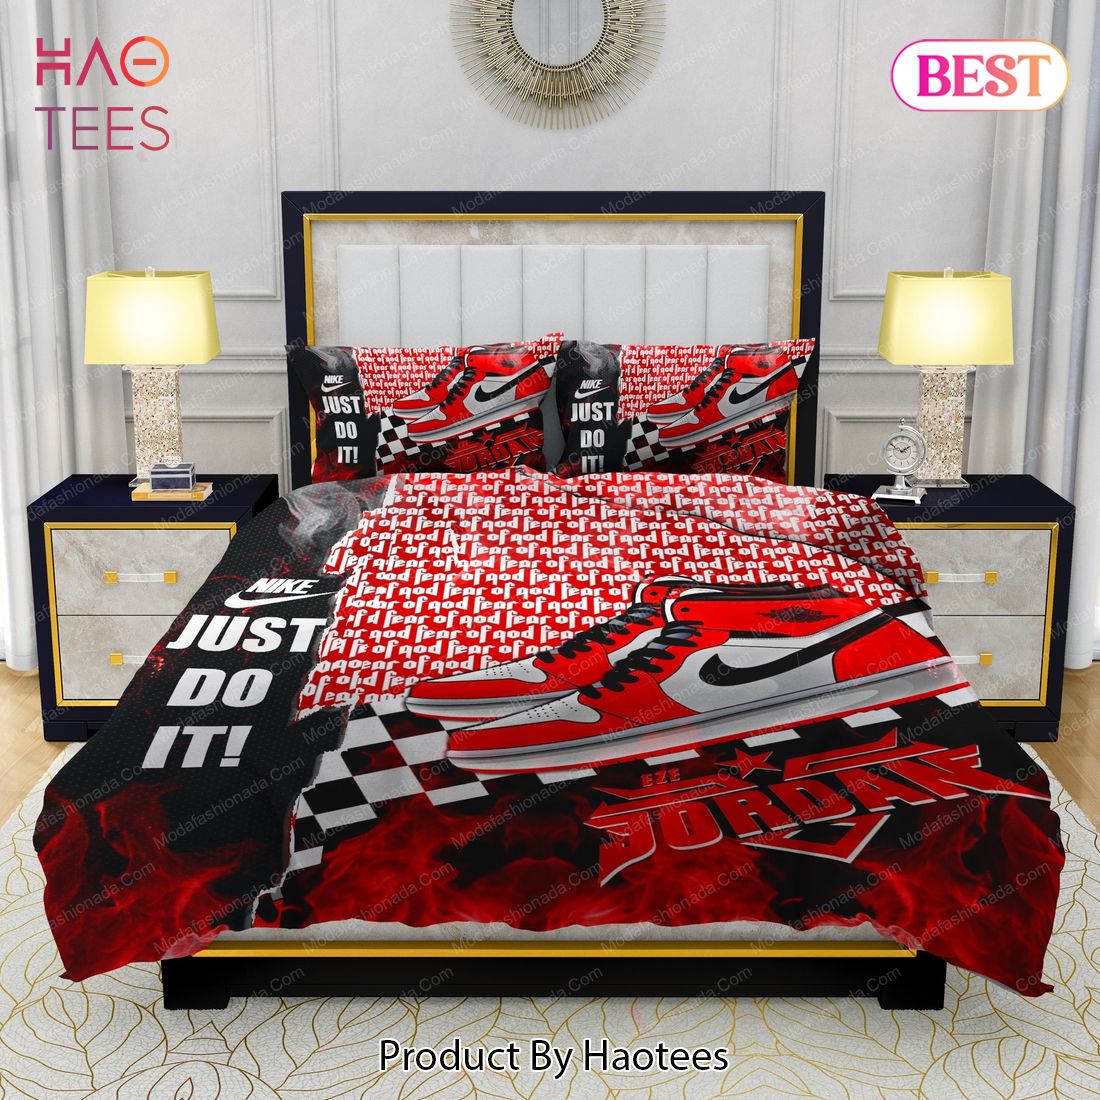 Famous Nike Air Jordan Fear Of God Bedding Sets Bed Sets, Bedroom Sets, Comforter Sets, Duvet Cover, Bedspread